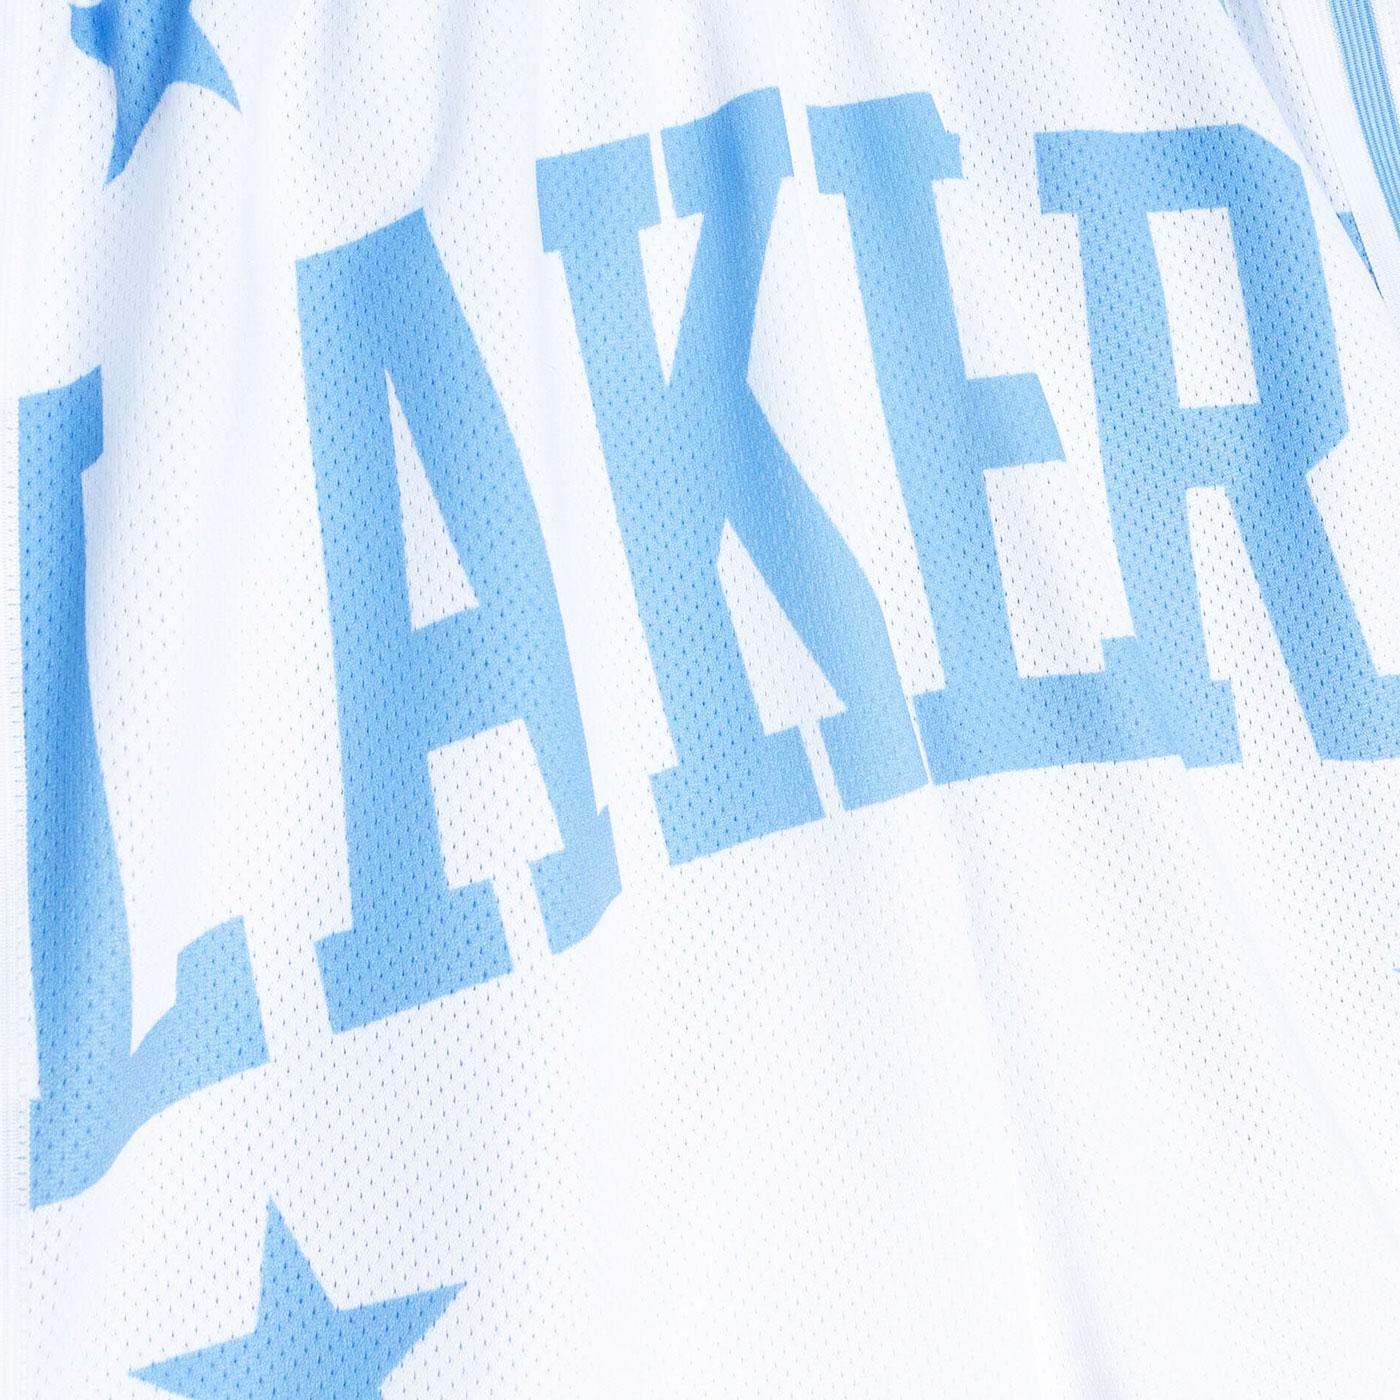 Big Face Shorts Los Angeles Lakers Printed